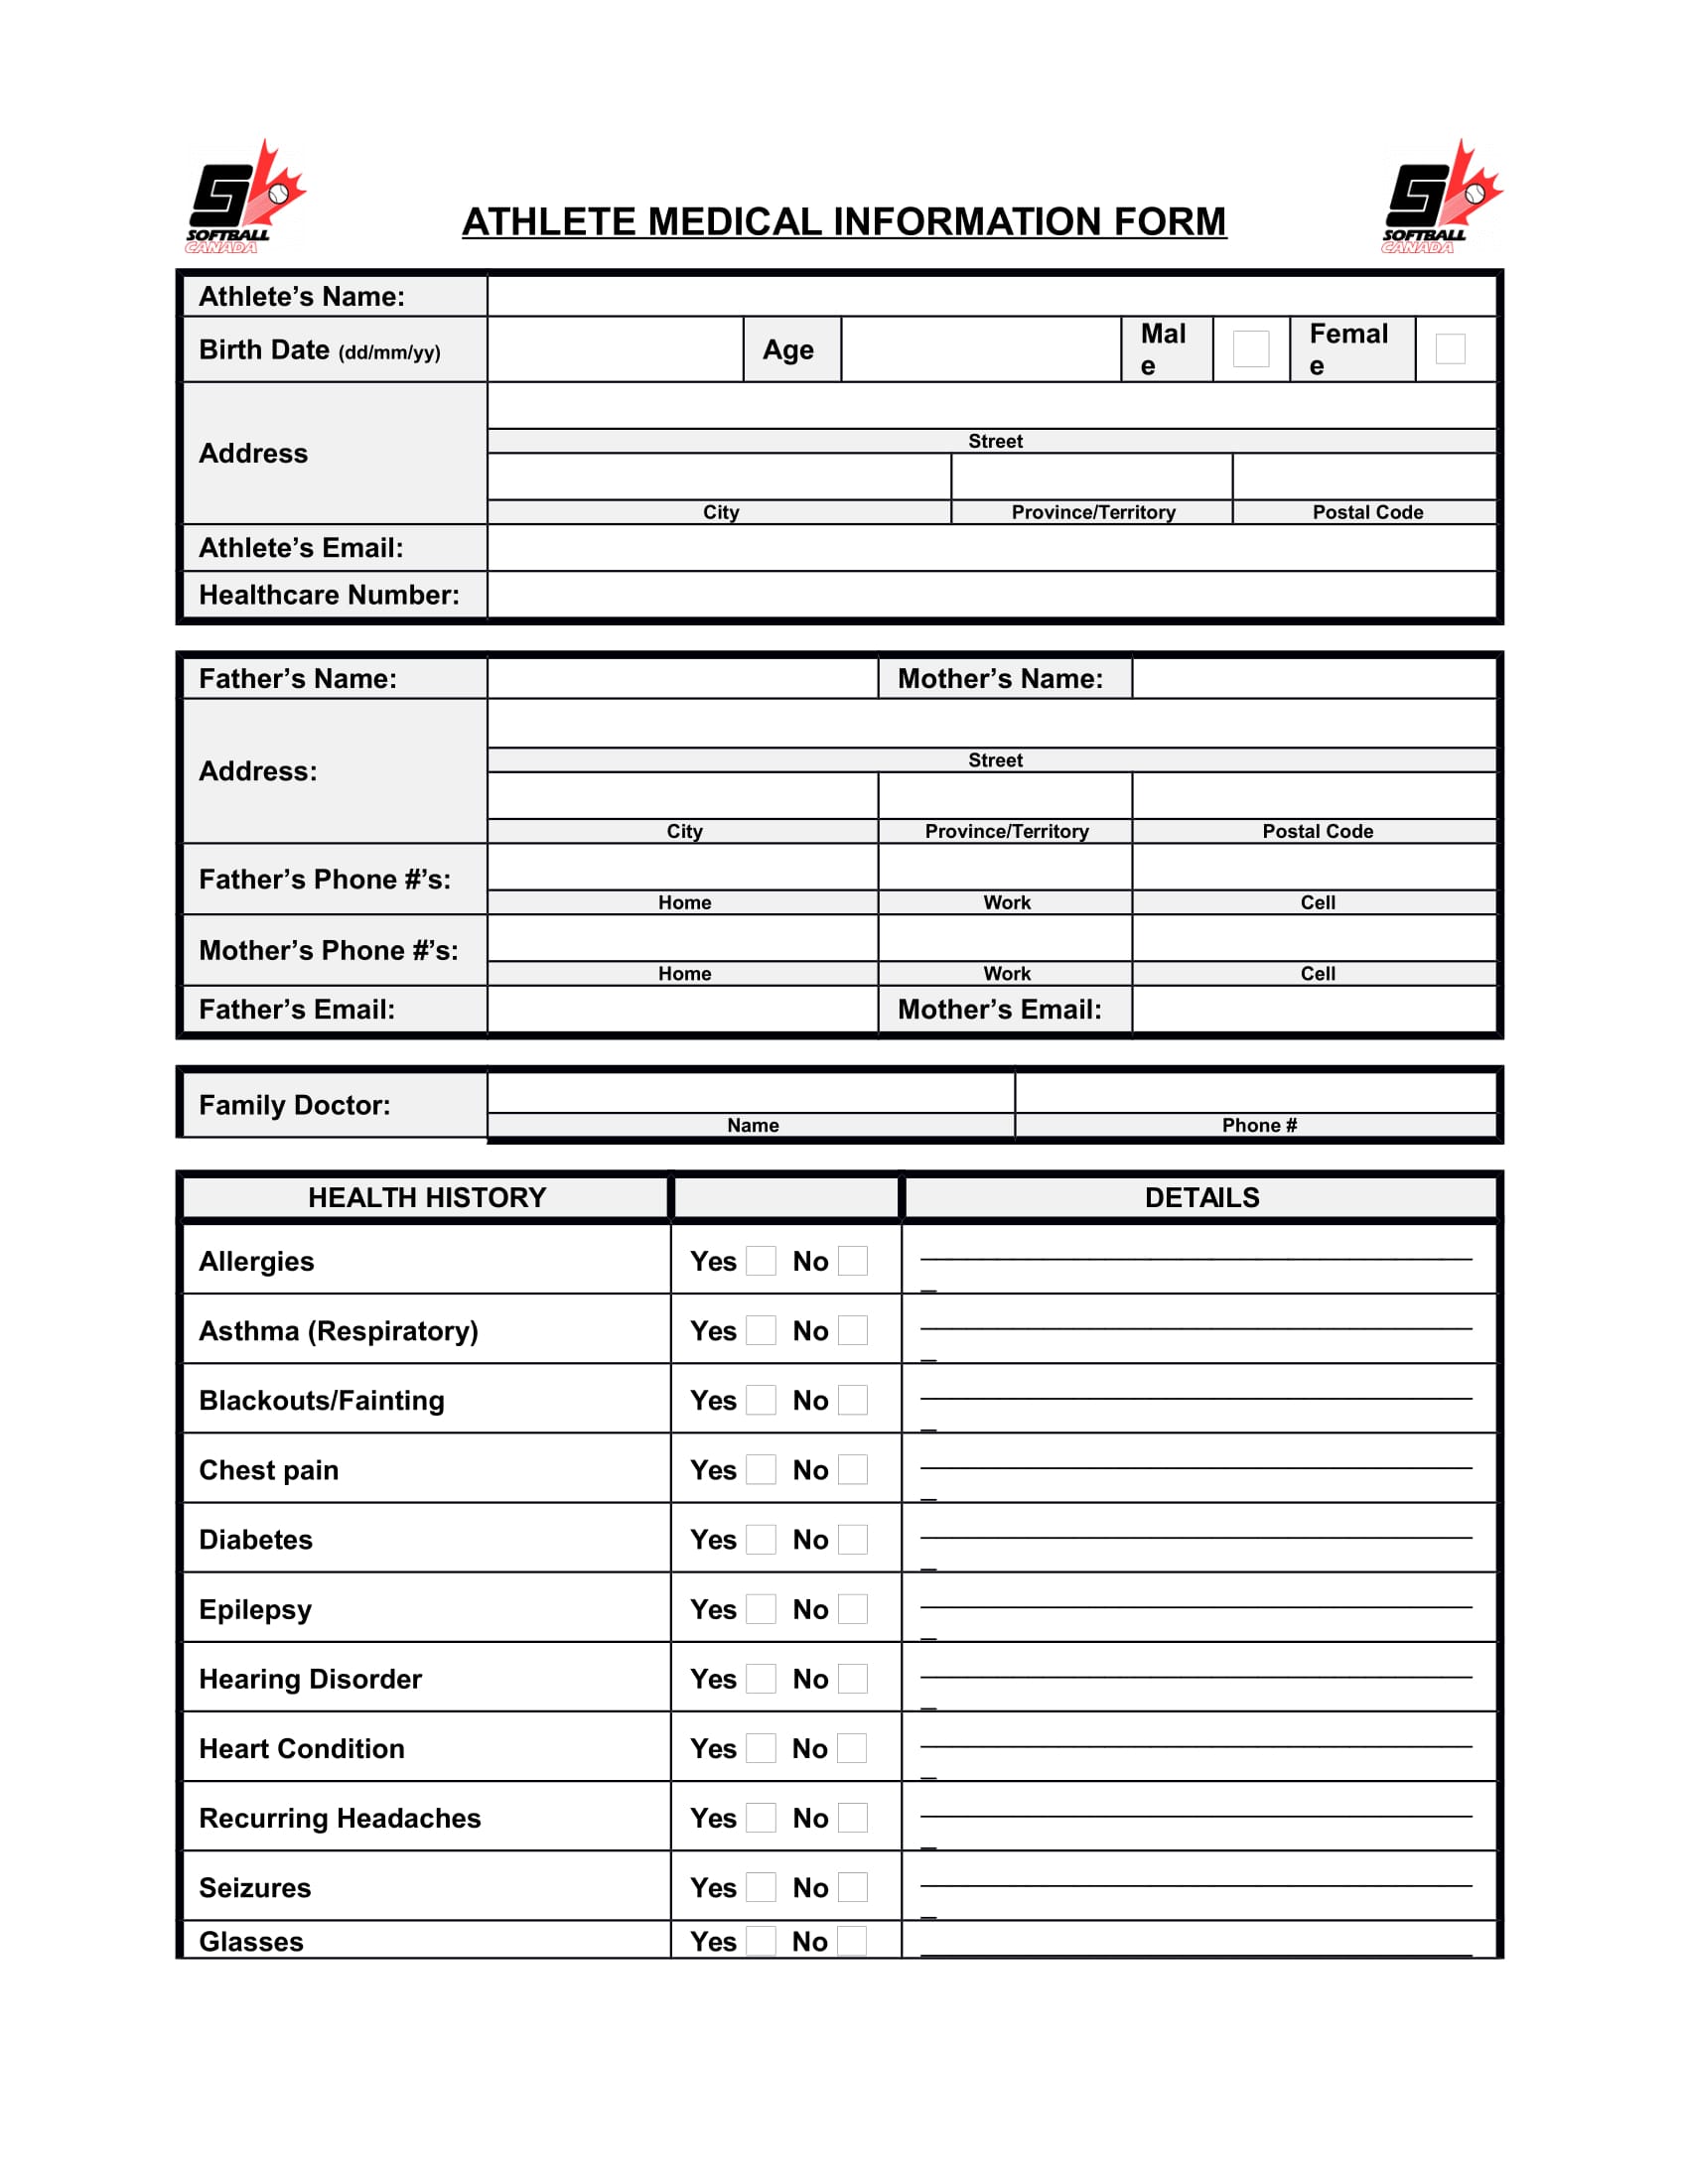 standard athlete medical information form 1